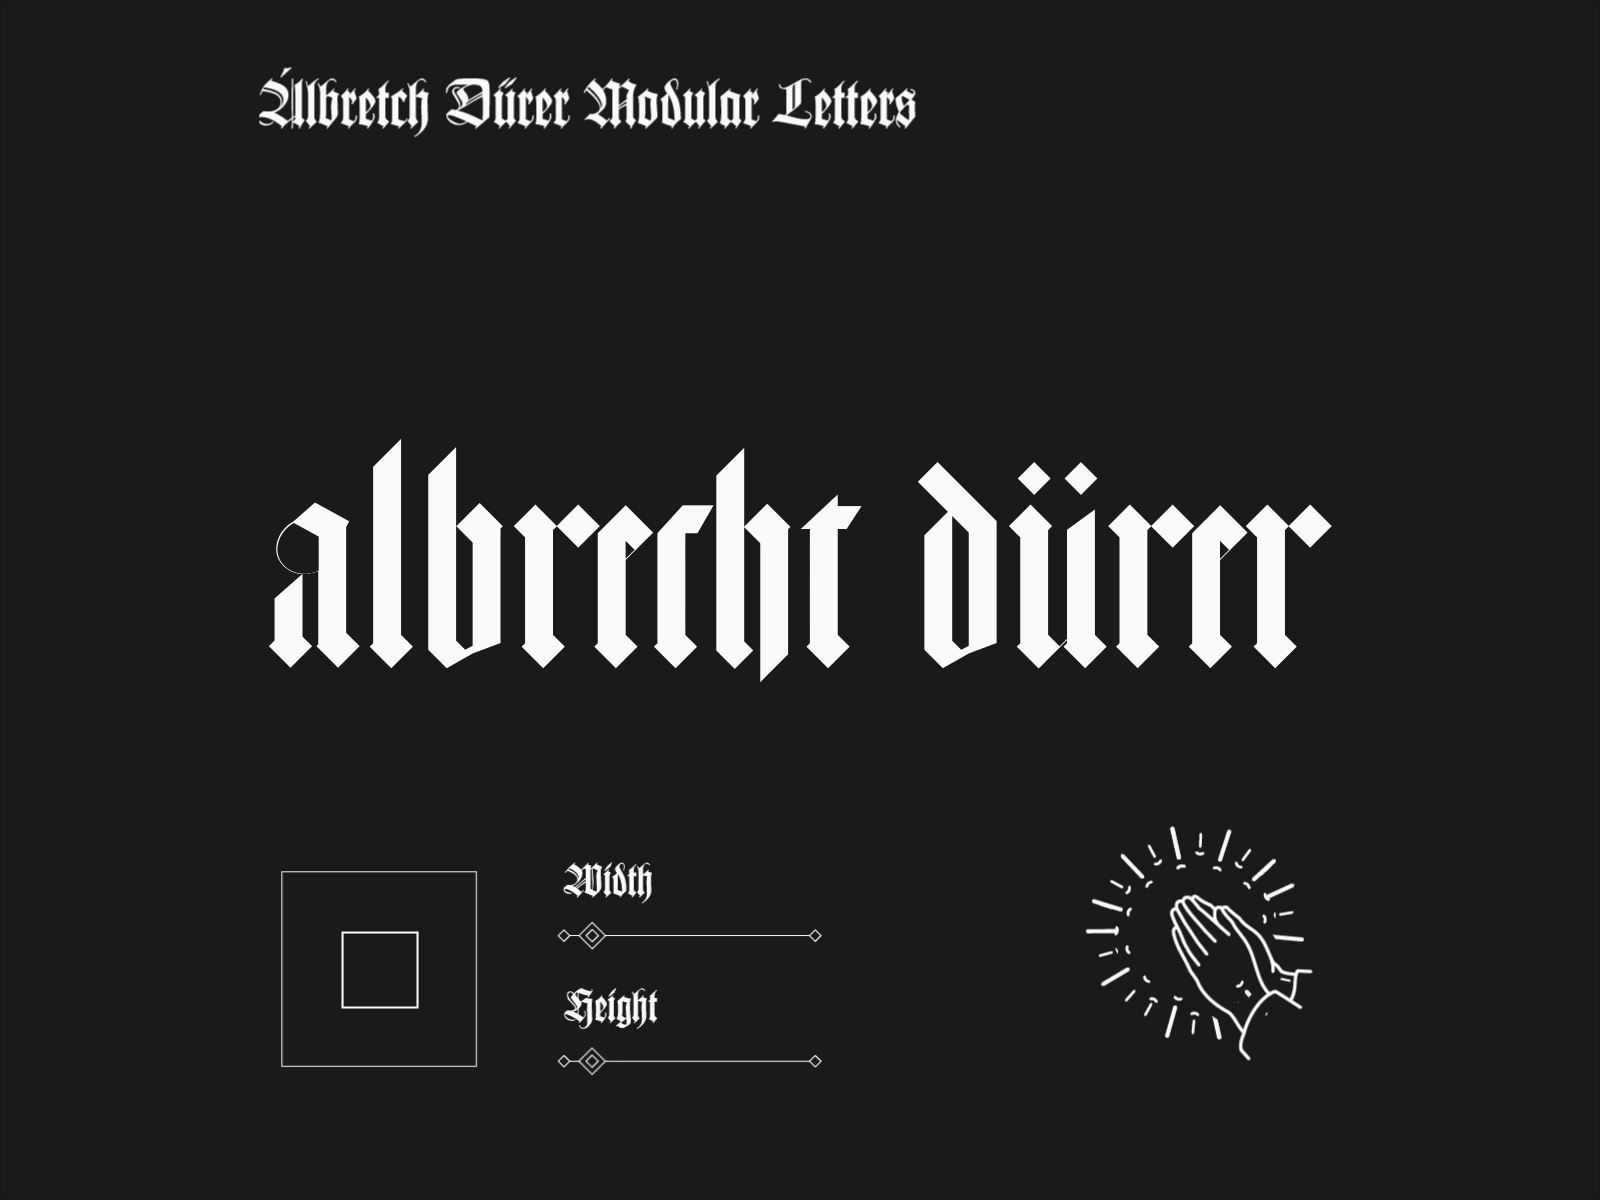 Albretch Durer Modular Letters